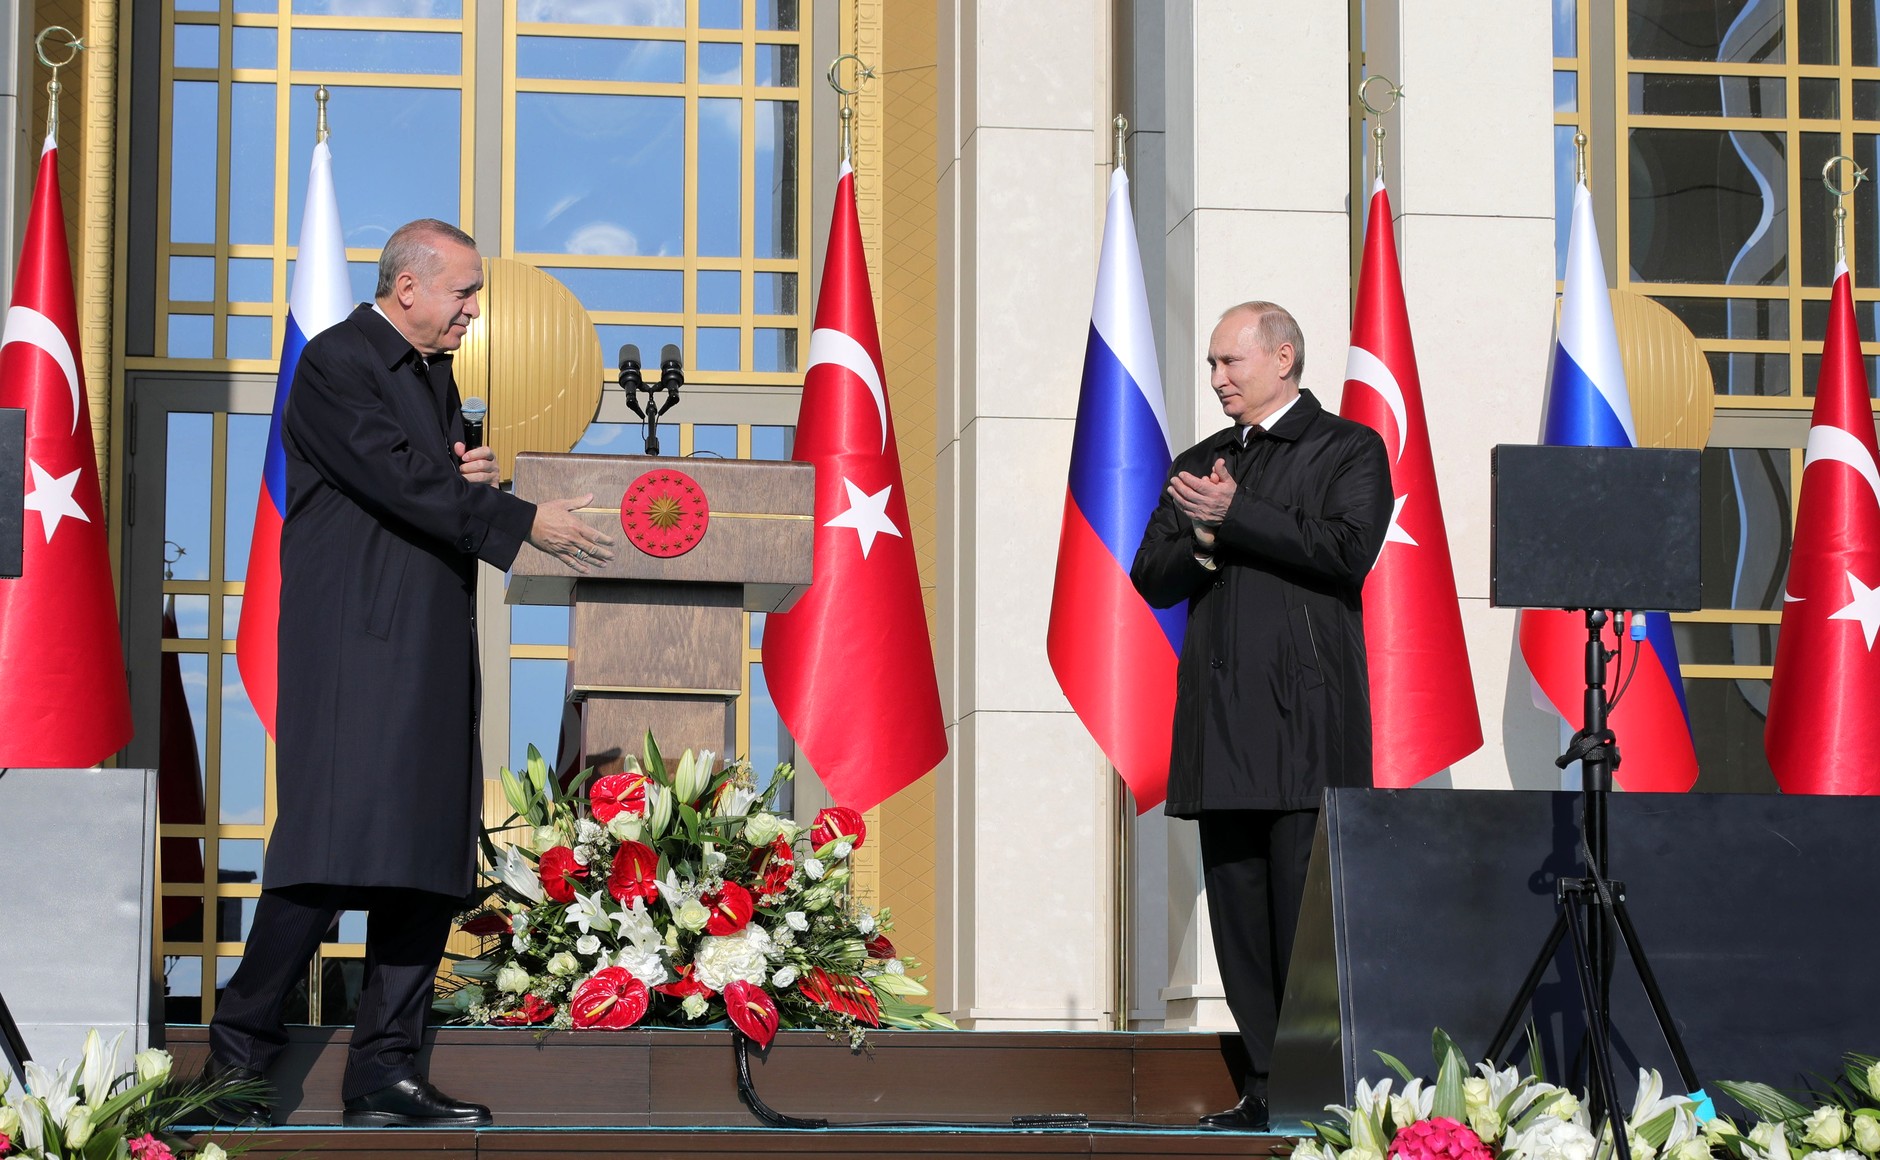 Трудная дружба: о чём договорились в Турции Путин и Эрдоган